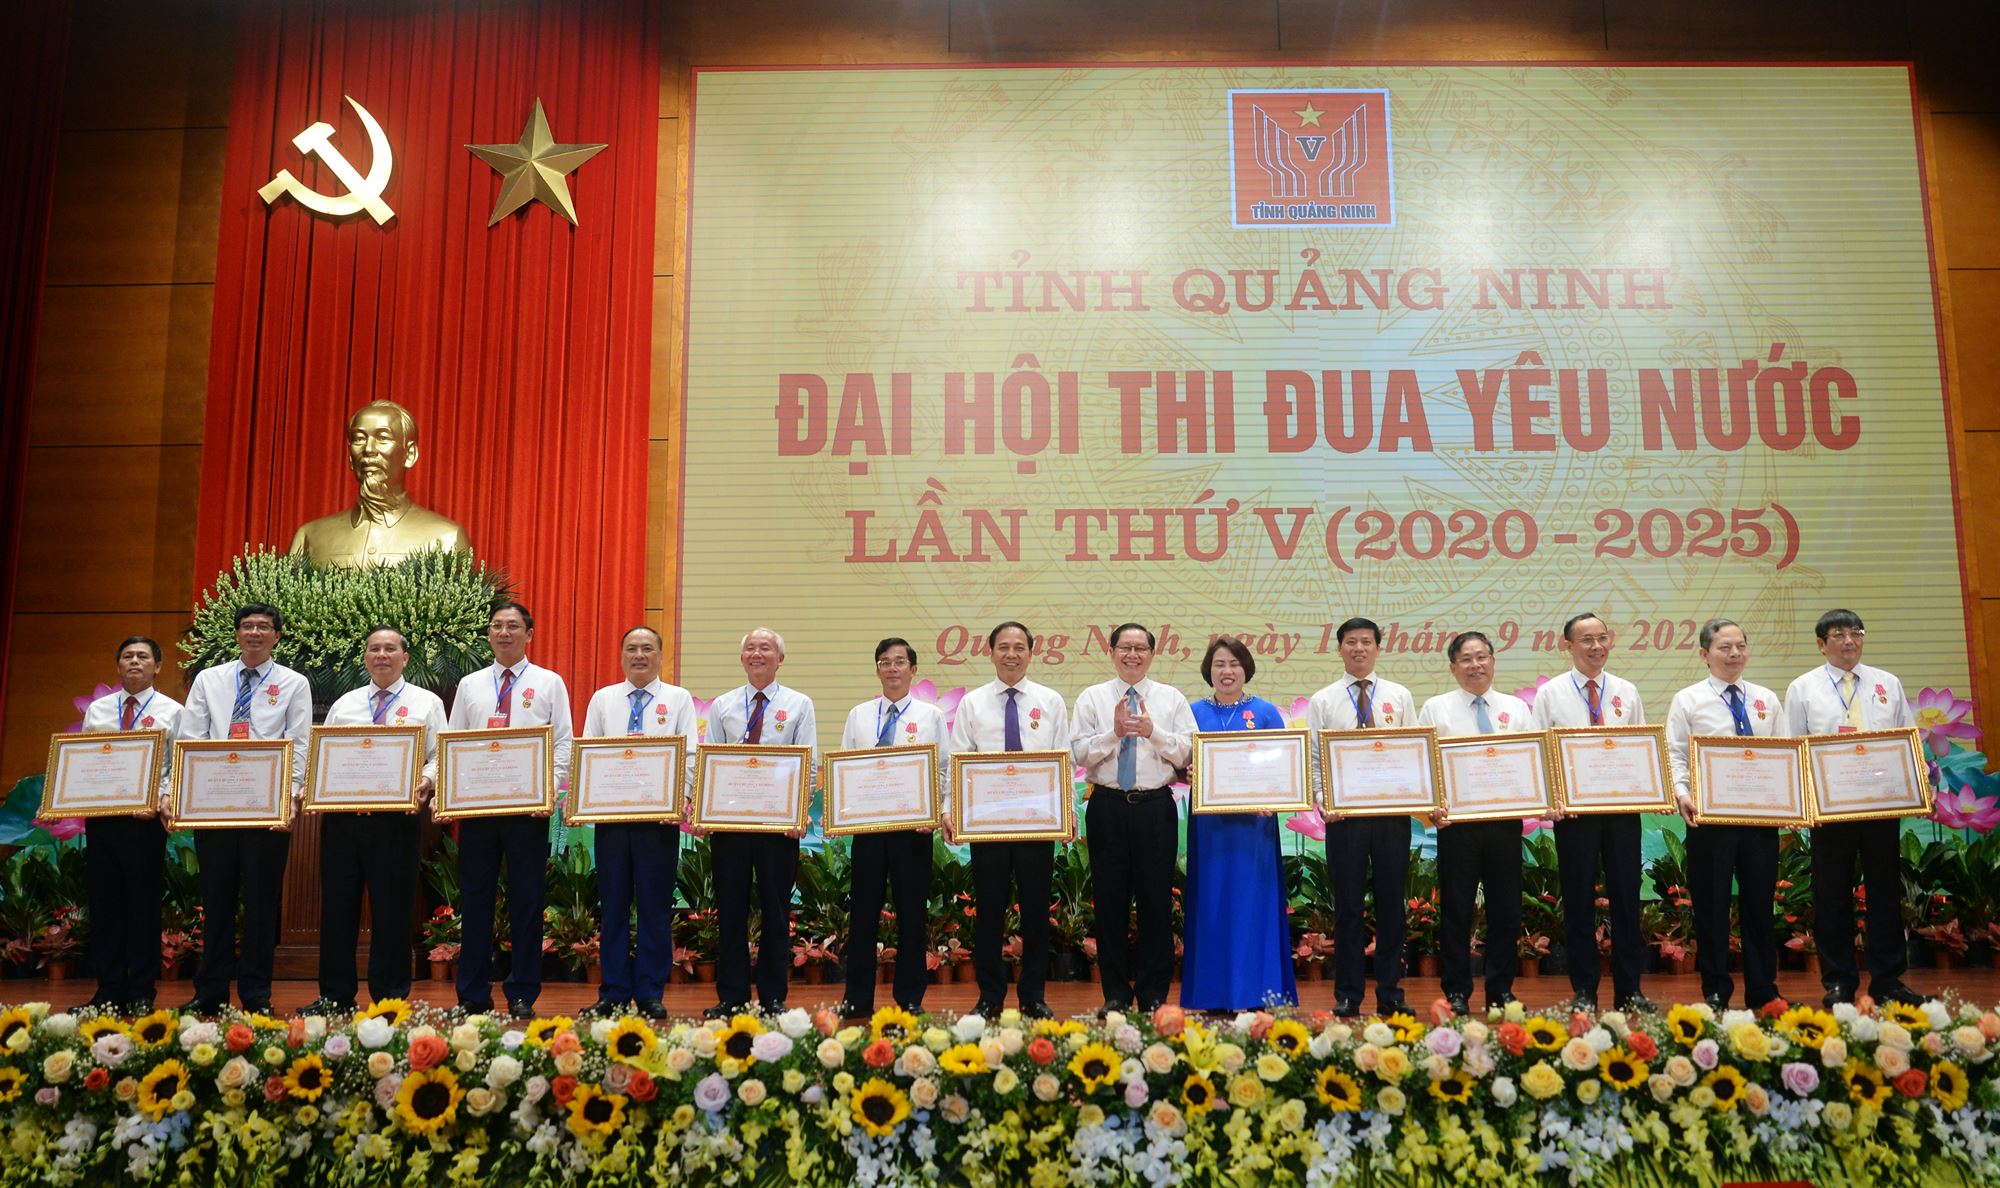 Các tập thể, cá nhân điển hình tiên tiến xuất sắc ấy cũng đã được tôn vinh, biểu dương, khen thưởng, ghi một dấu ấn quan trọng tại Đại hội Thi đua yêu nước lần thứ V của tỉnh Quảng Ninh.